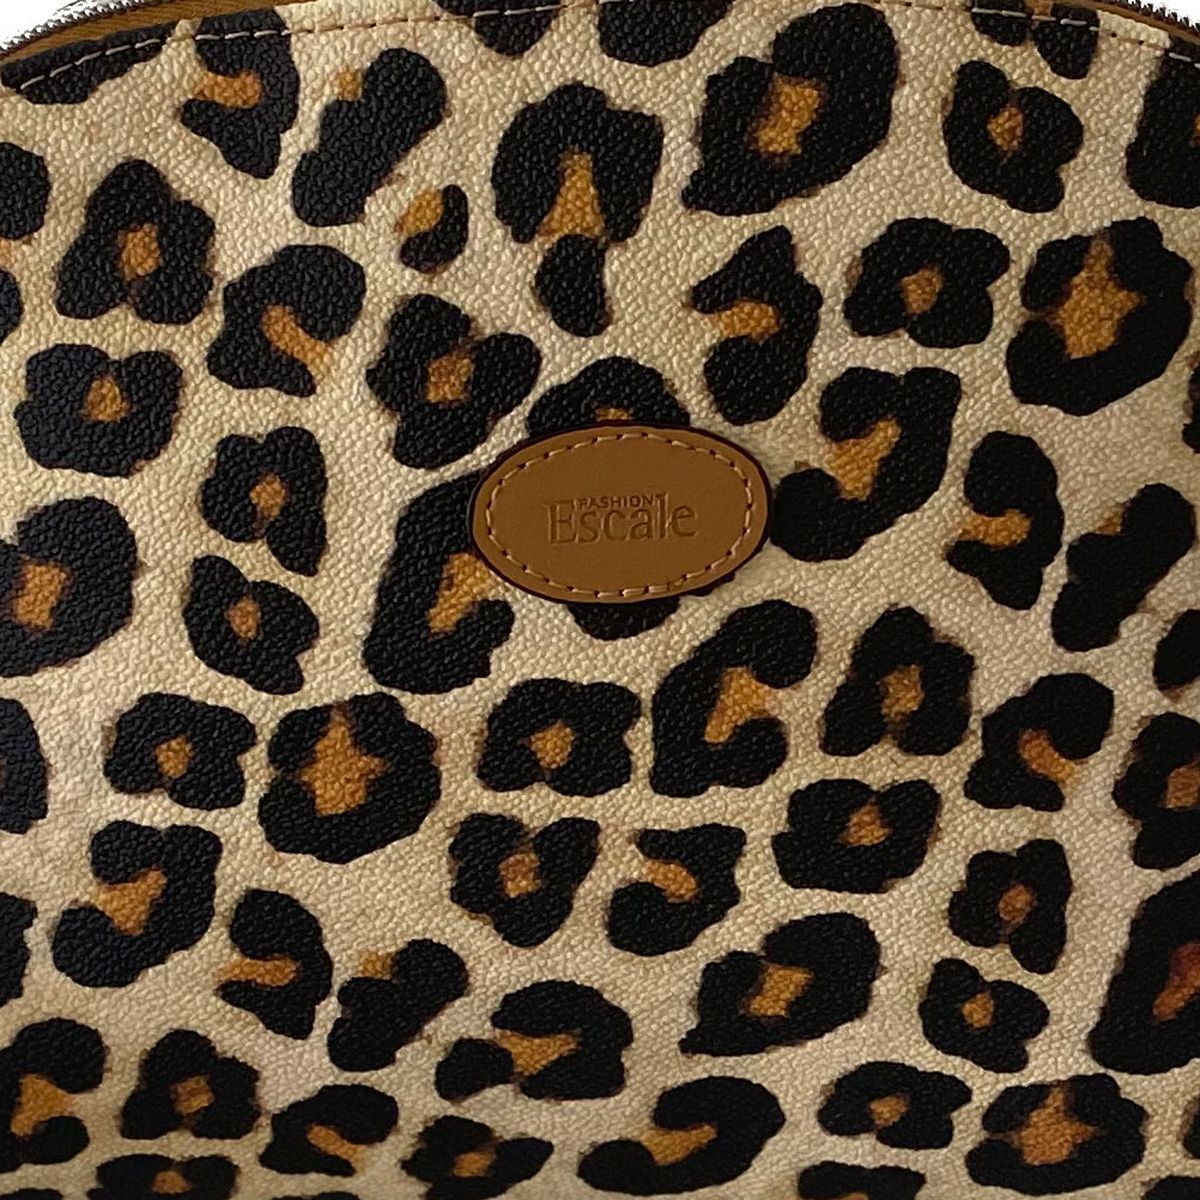 Leopard shoulder bag Made In France